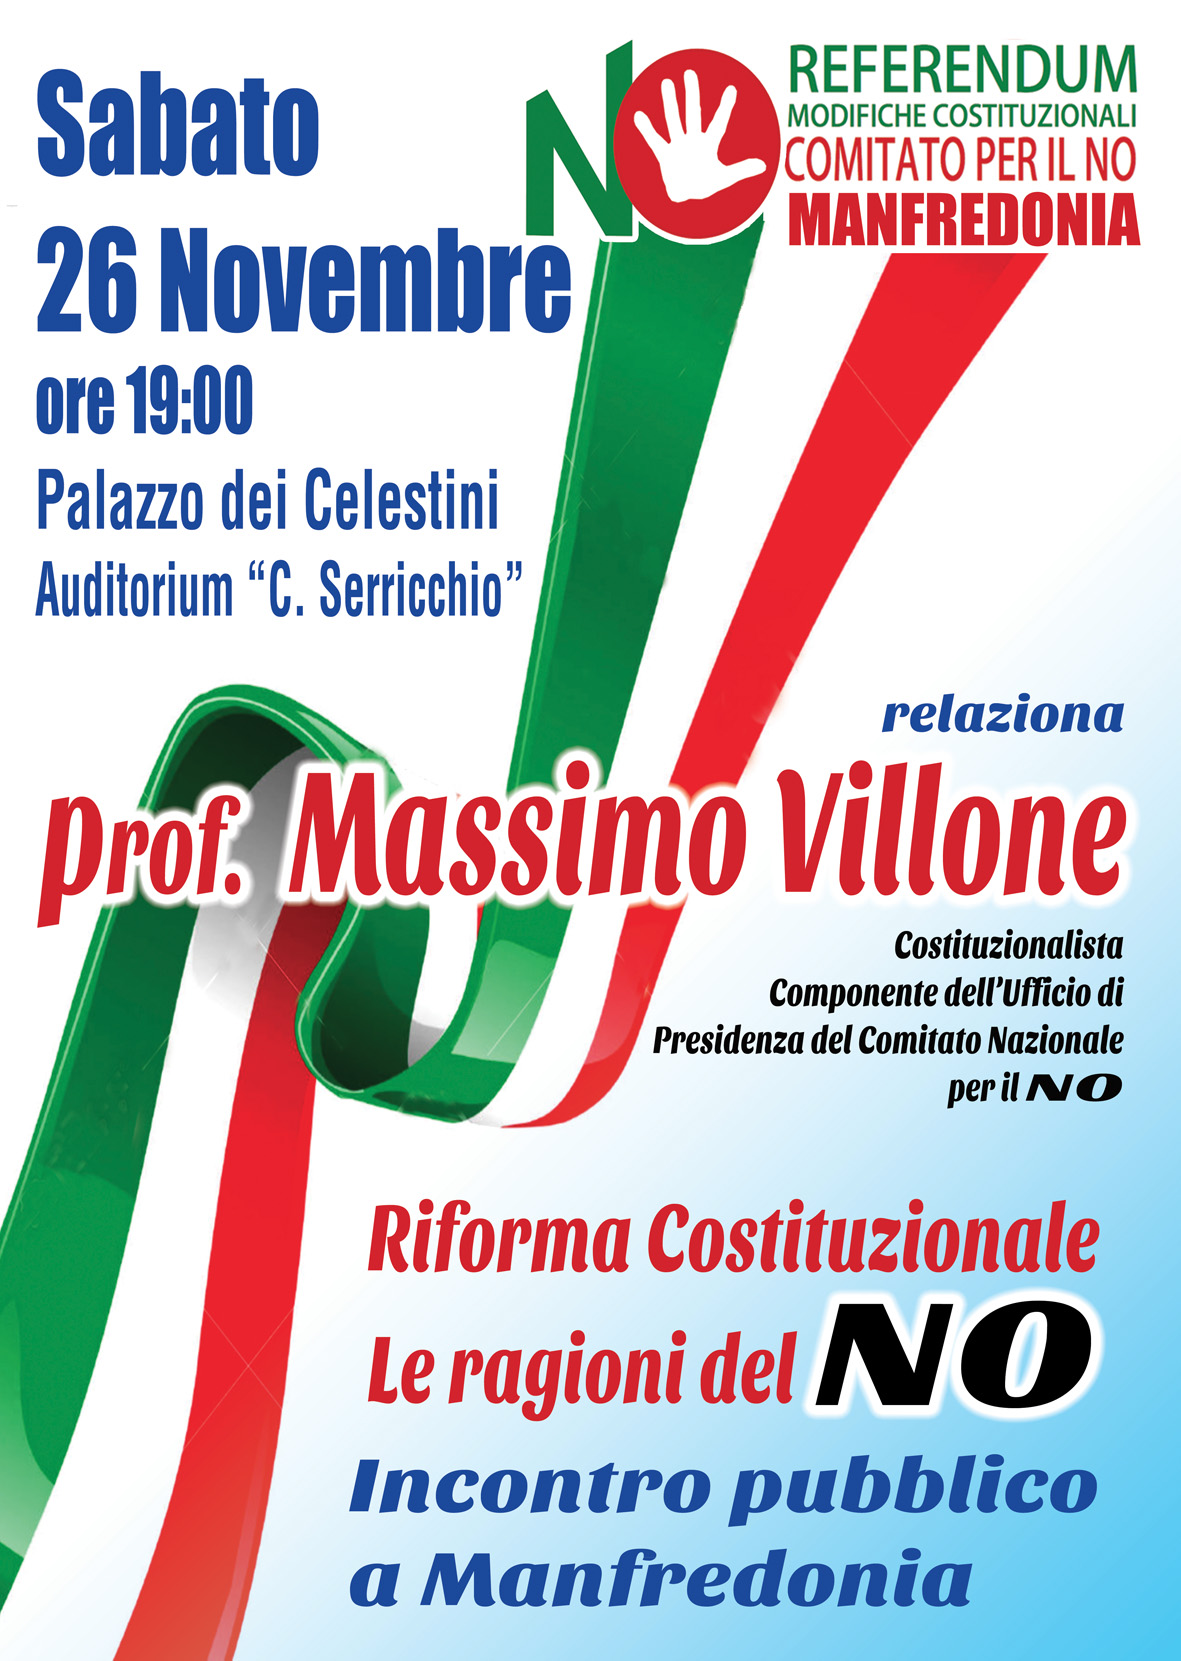 Evento pubblico del Comitato del No sabato 26 novembre a Palazzo Celestini